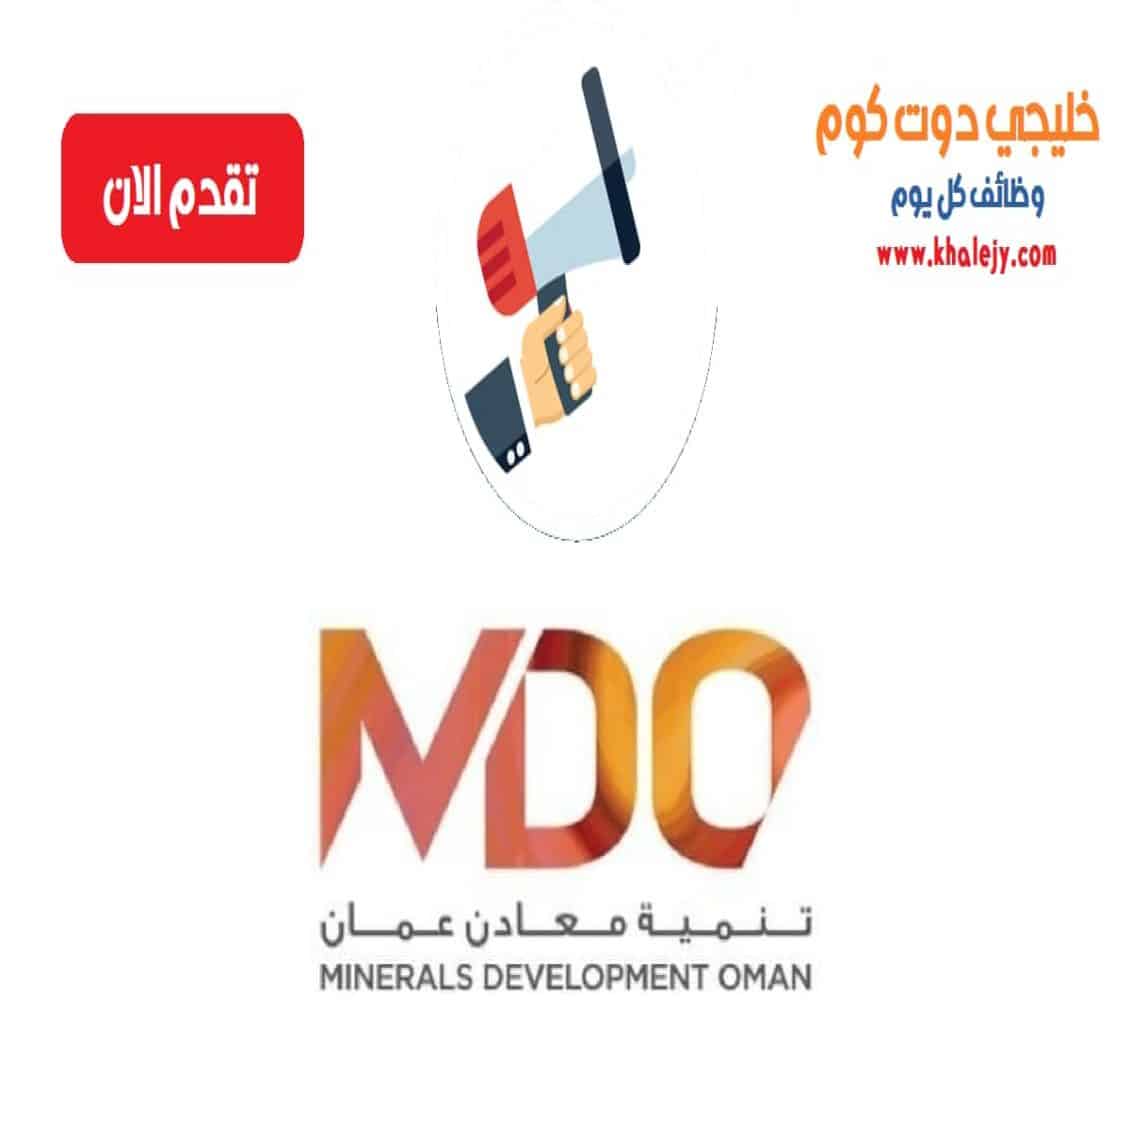 وظائف شركة تنمية معادن عمان في سلطنة عمان